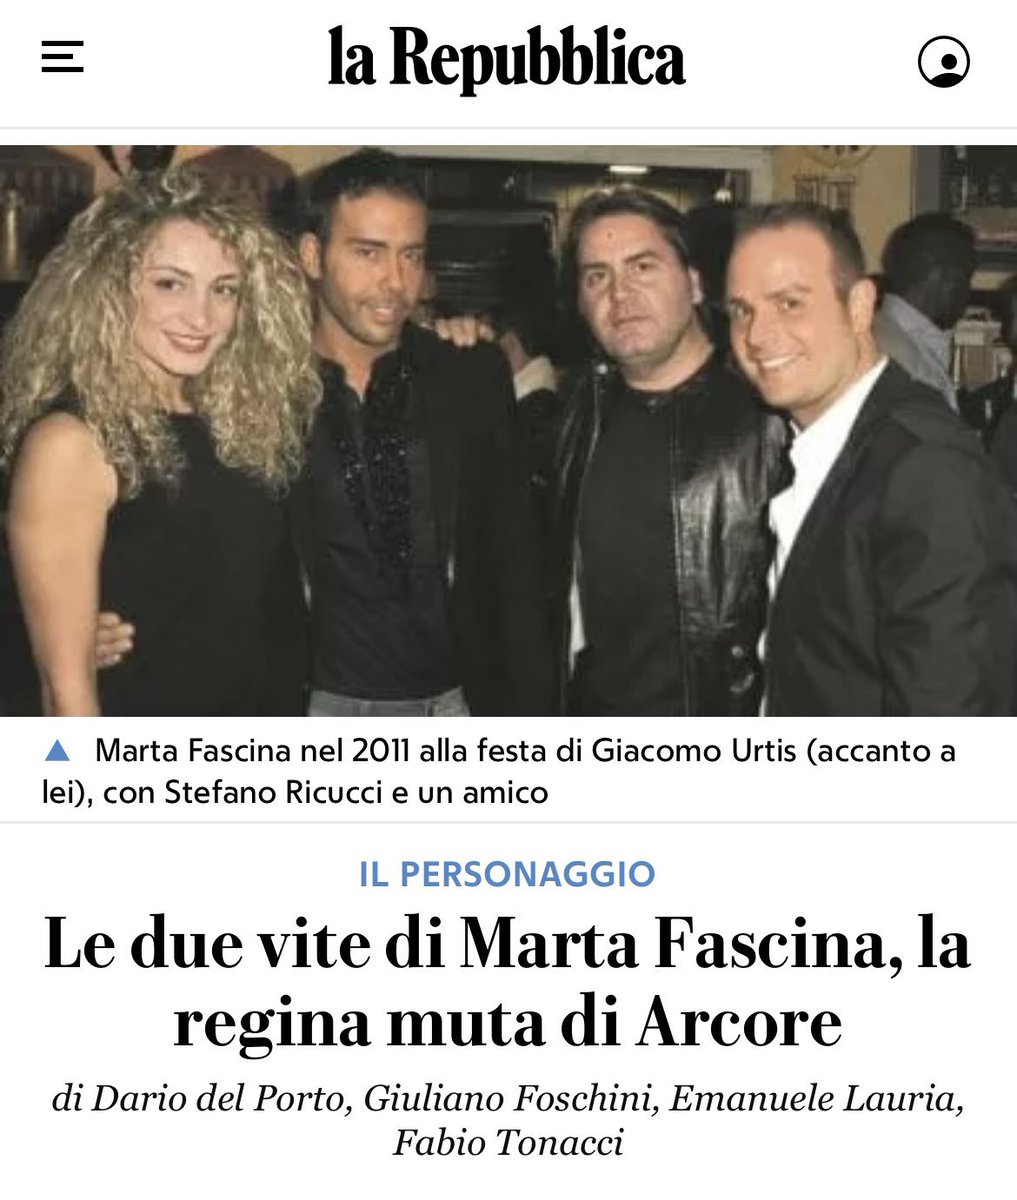 Le “inchieste” di #Repubblica: 4 giornalisti per passare al setaccio la vita della Fascina prima di #Berlusconi 

Pulitzer subito!